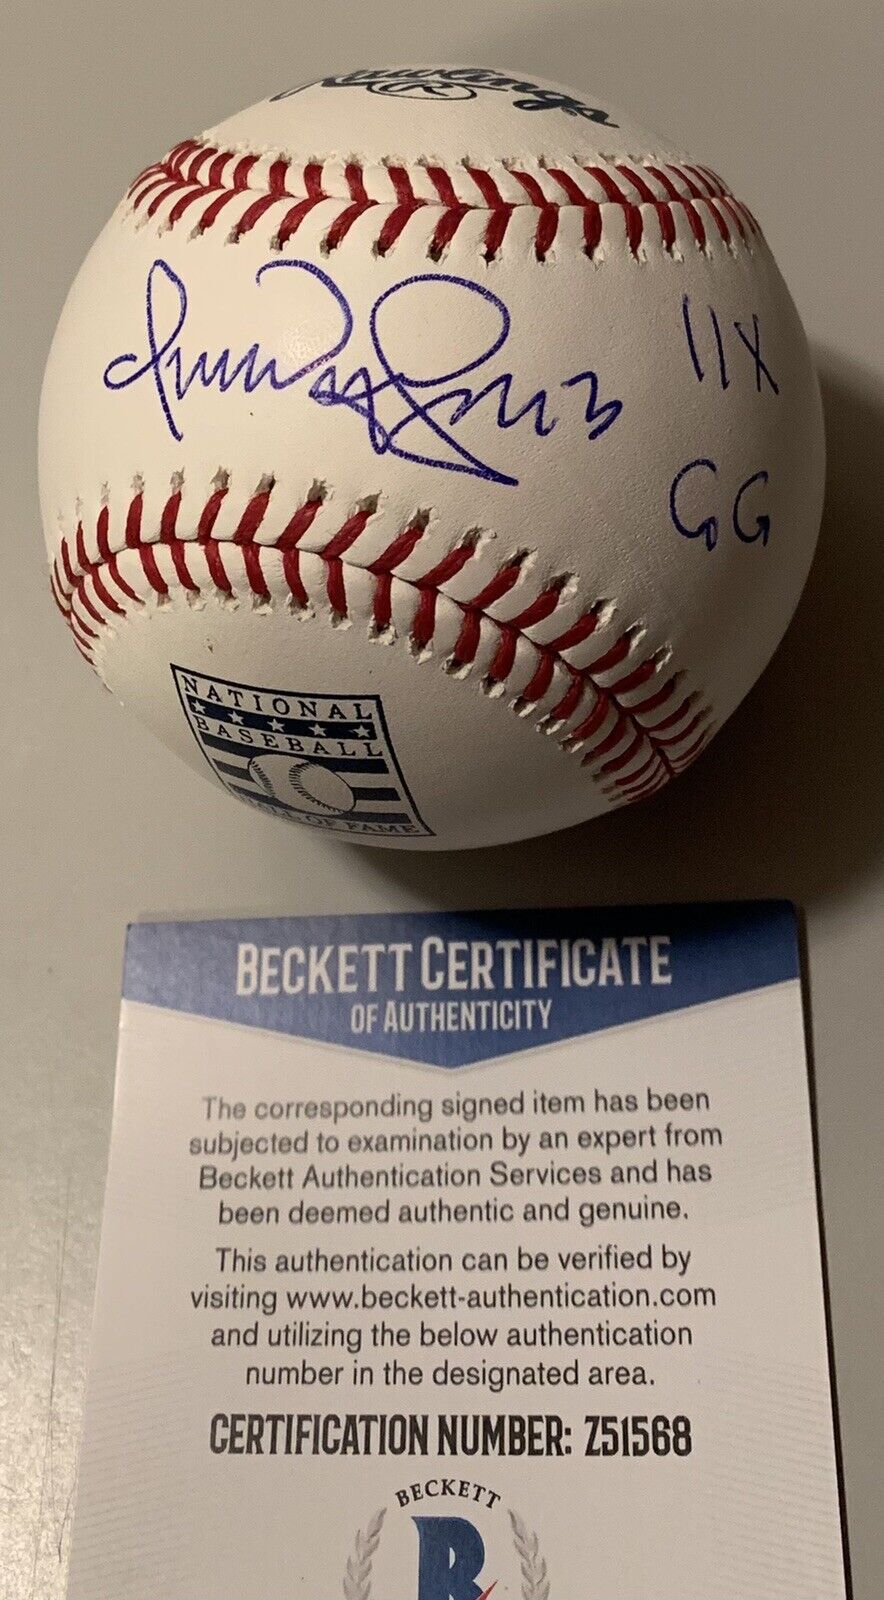 Omar Vizquel Cleveland Indians “11 X GG” Signed Major League Baseball Beckett